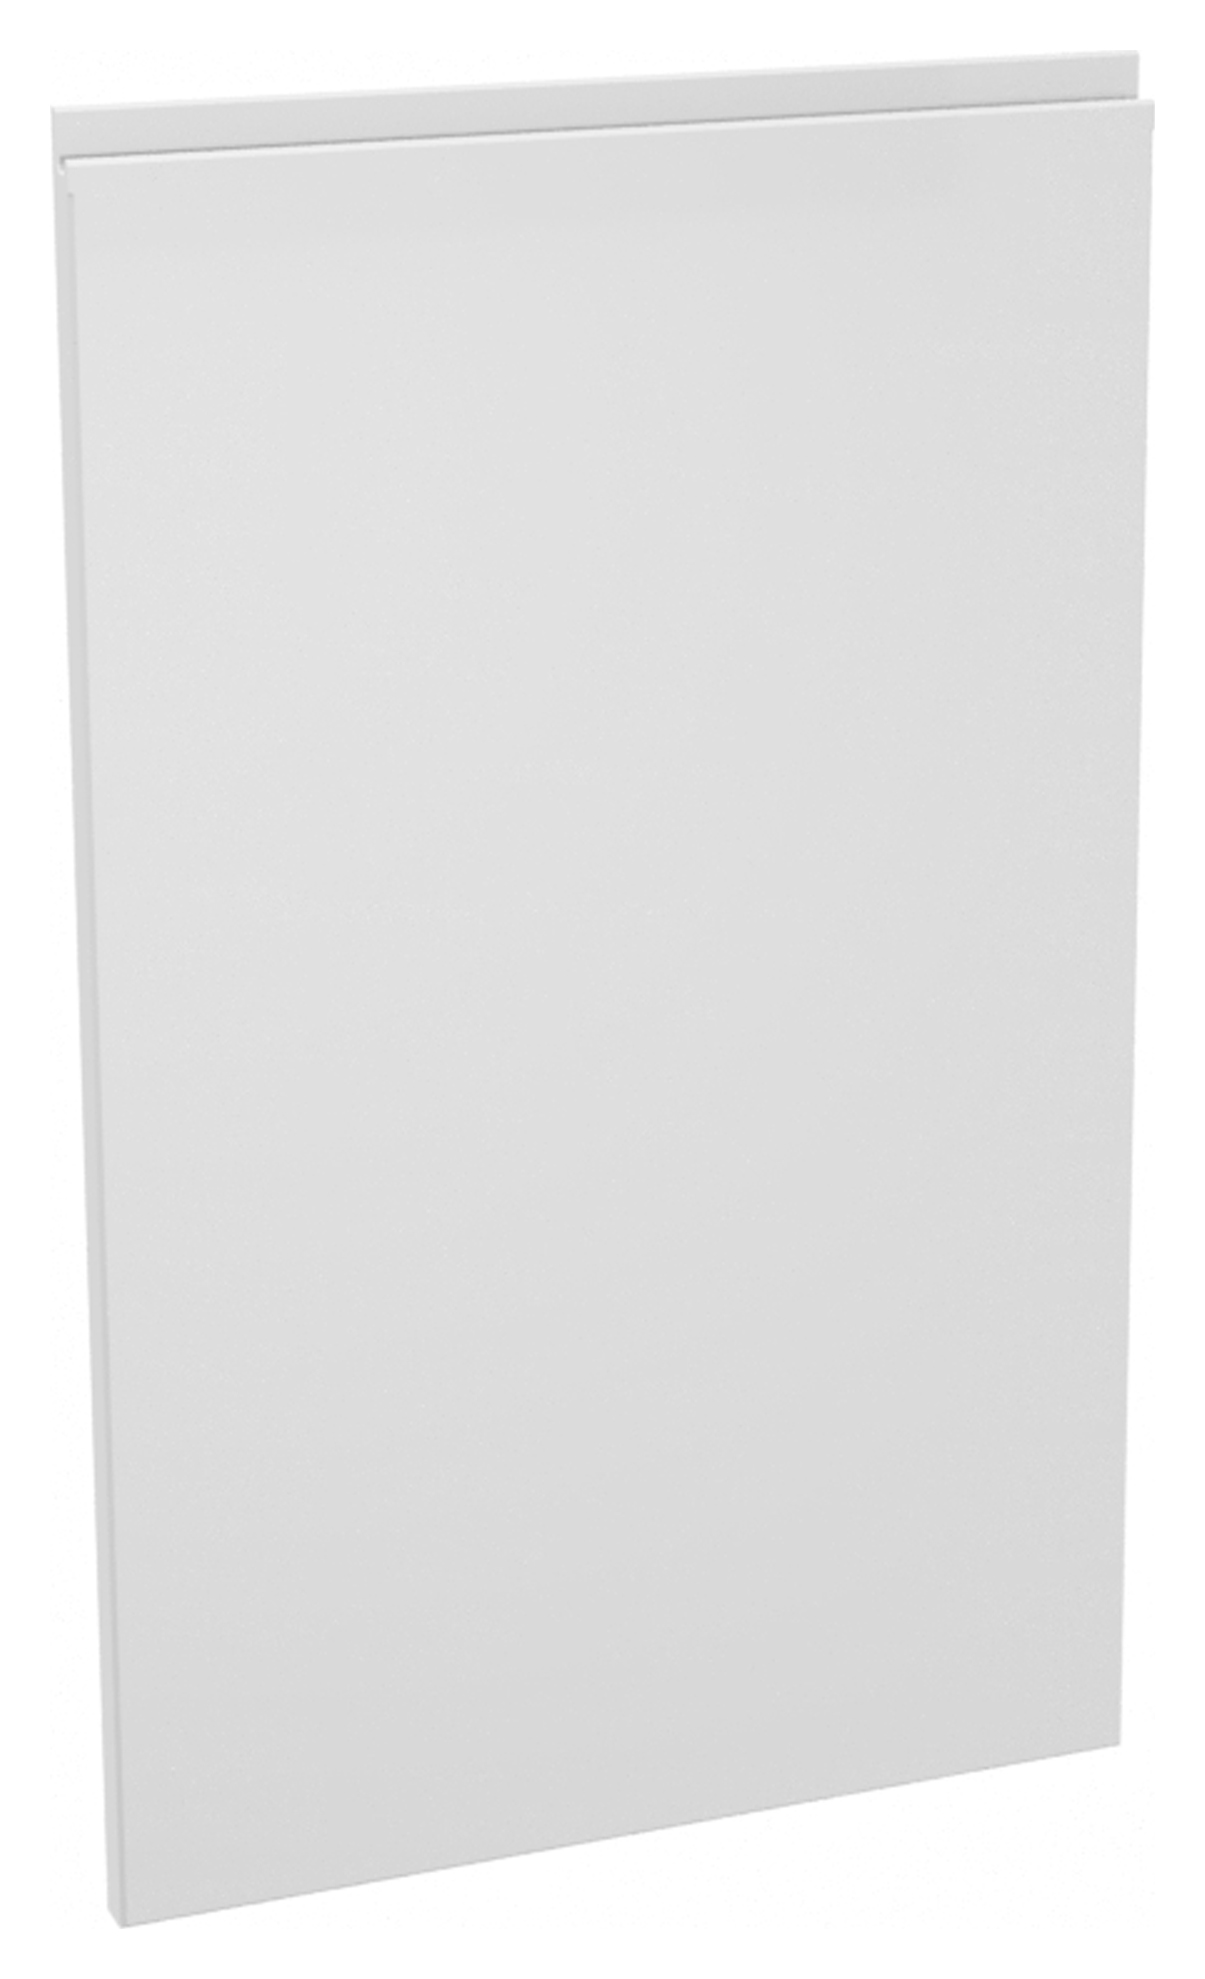 Wickes Madison White Appliance Fascia - 450 x 731mm